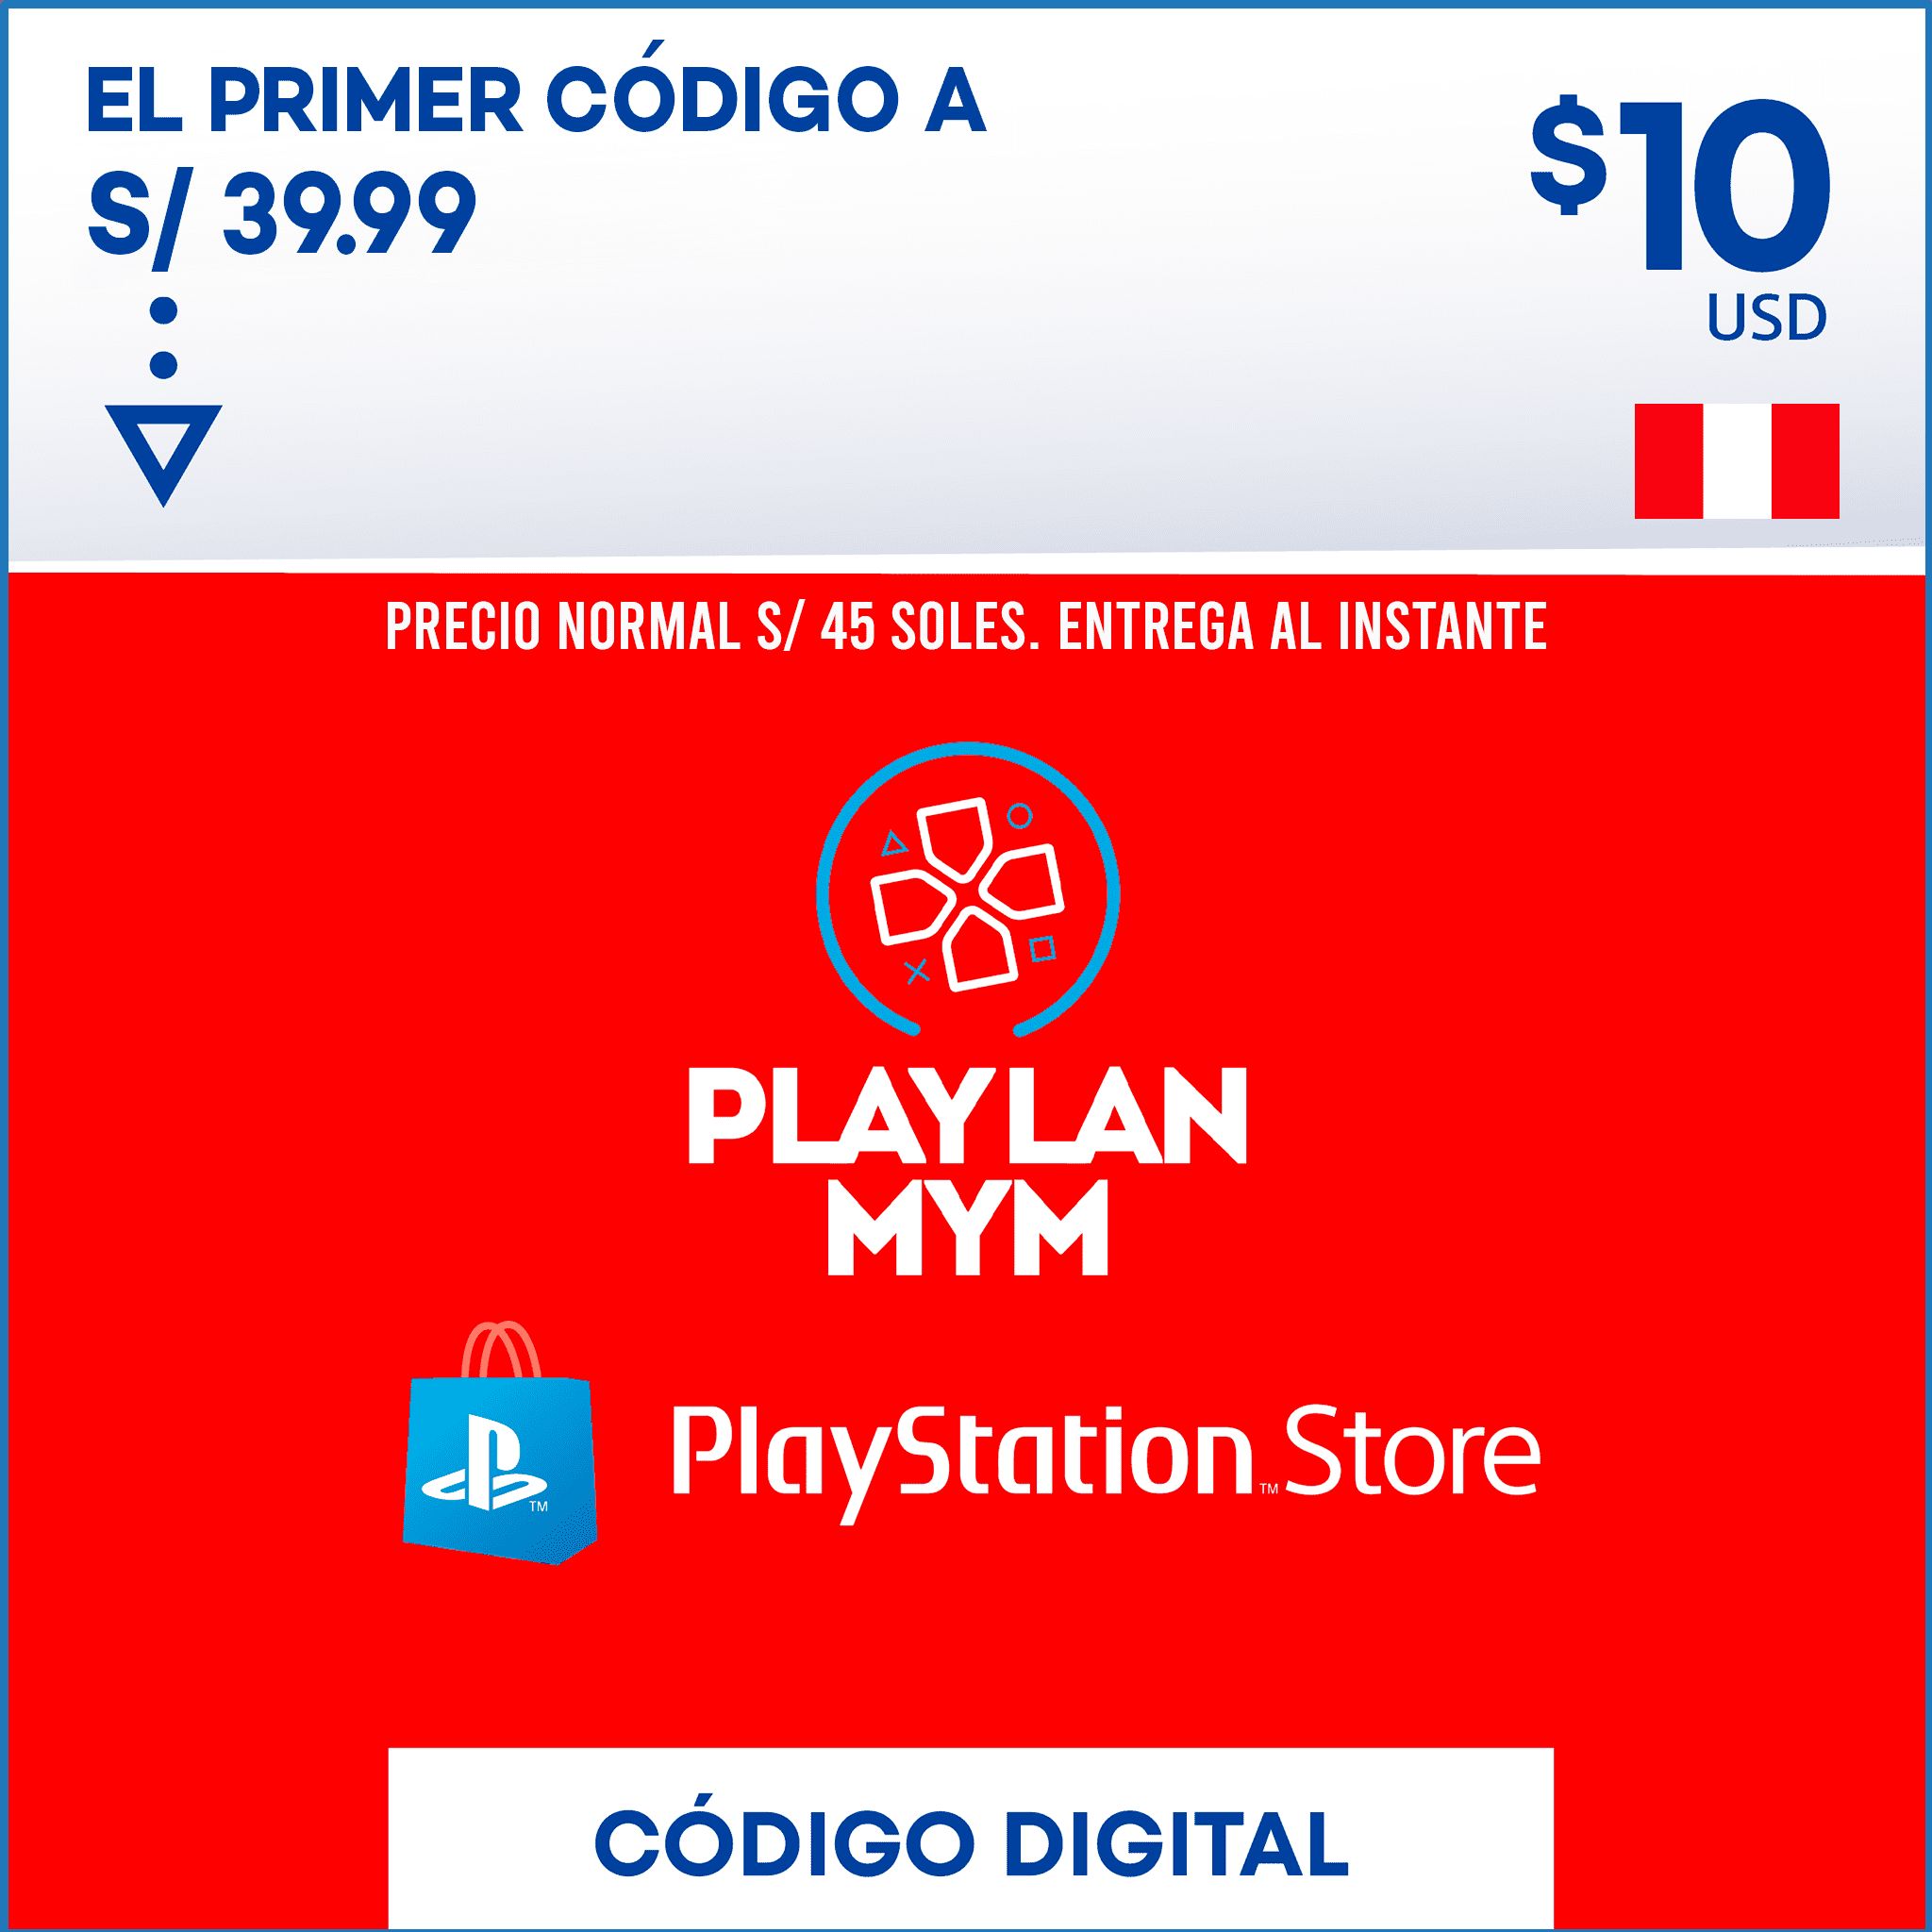 PS5 Digital Peru, Venta de Juegos Digitales Perú